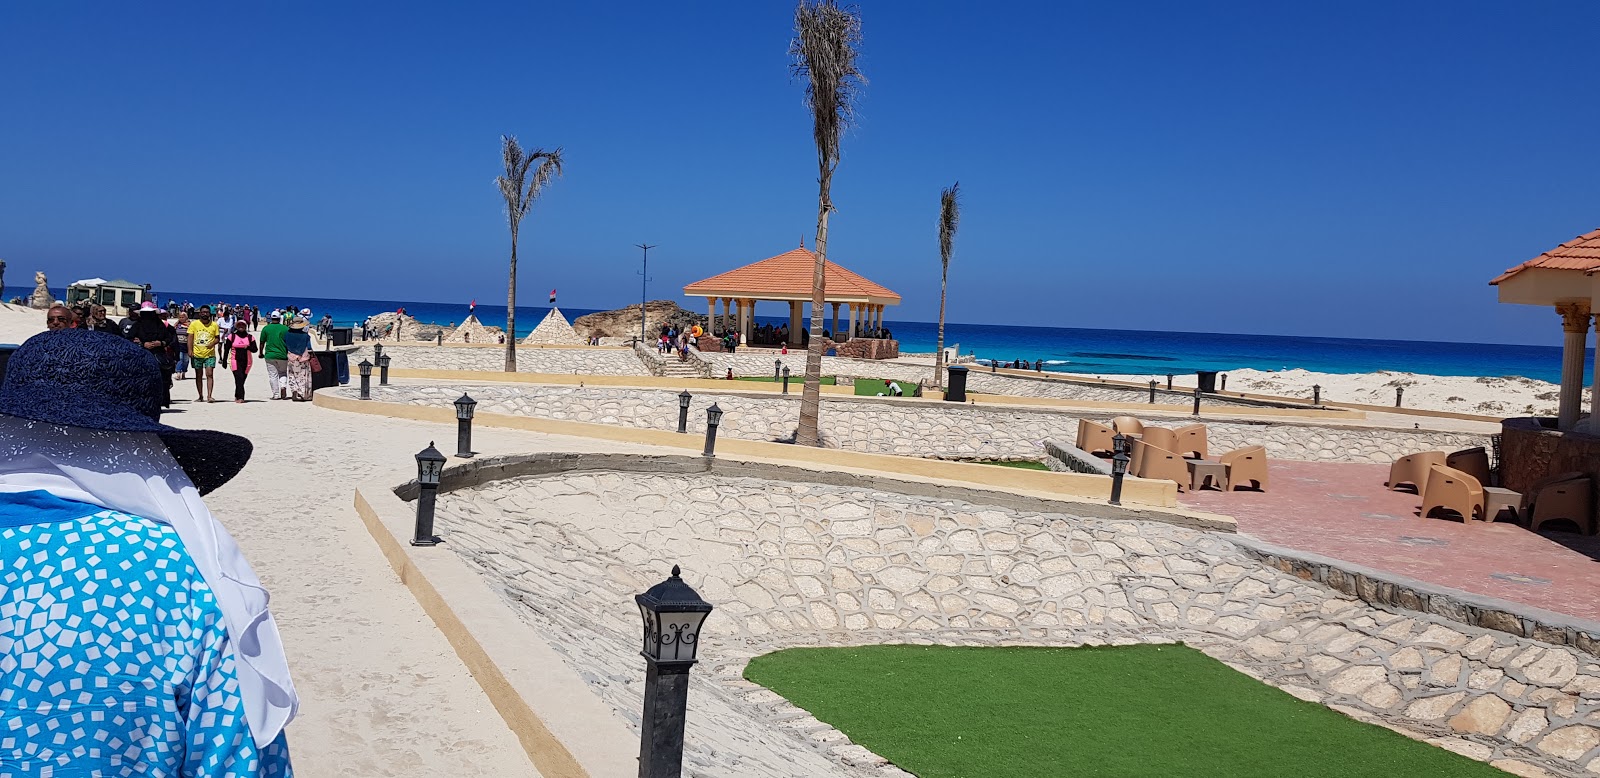 Eagles Resort in Cleopatra Beach'in fotoğrafı - Çocuklu aile gezginleri için önerilir